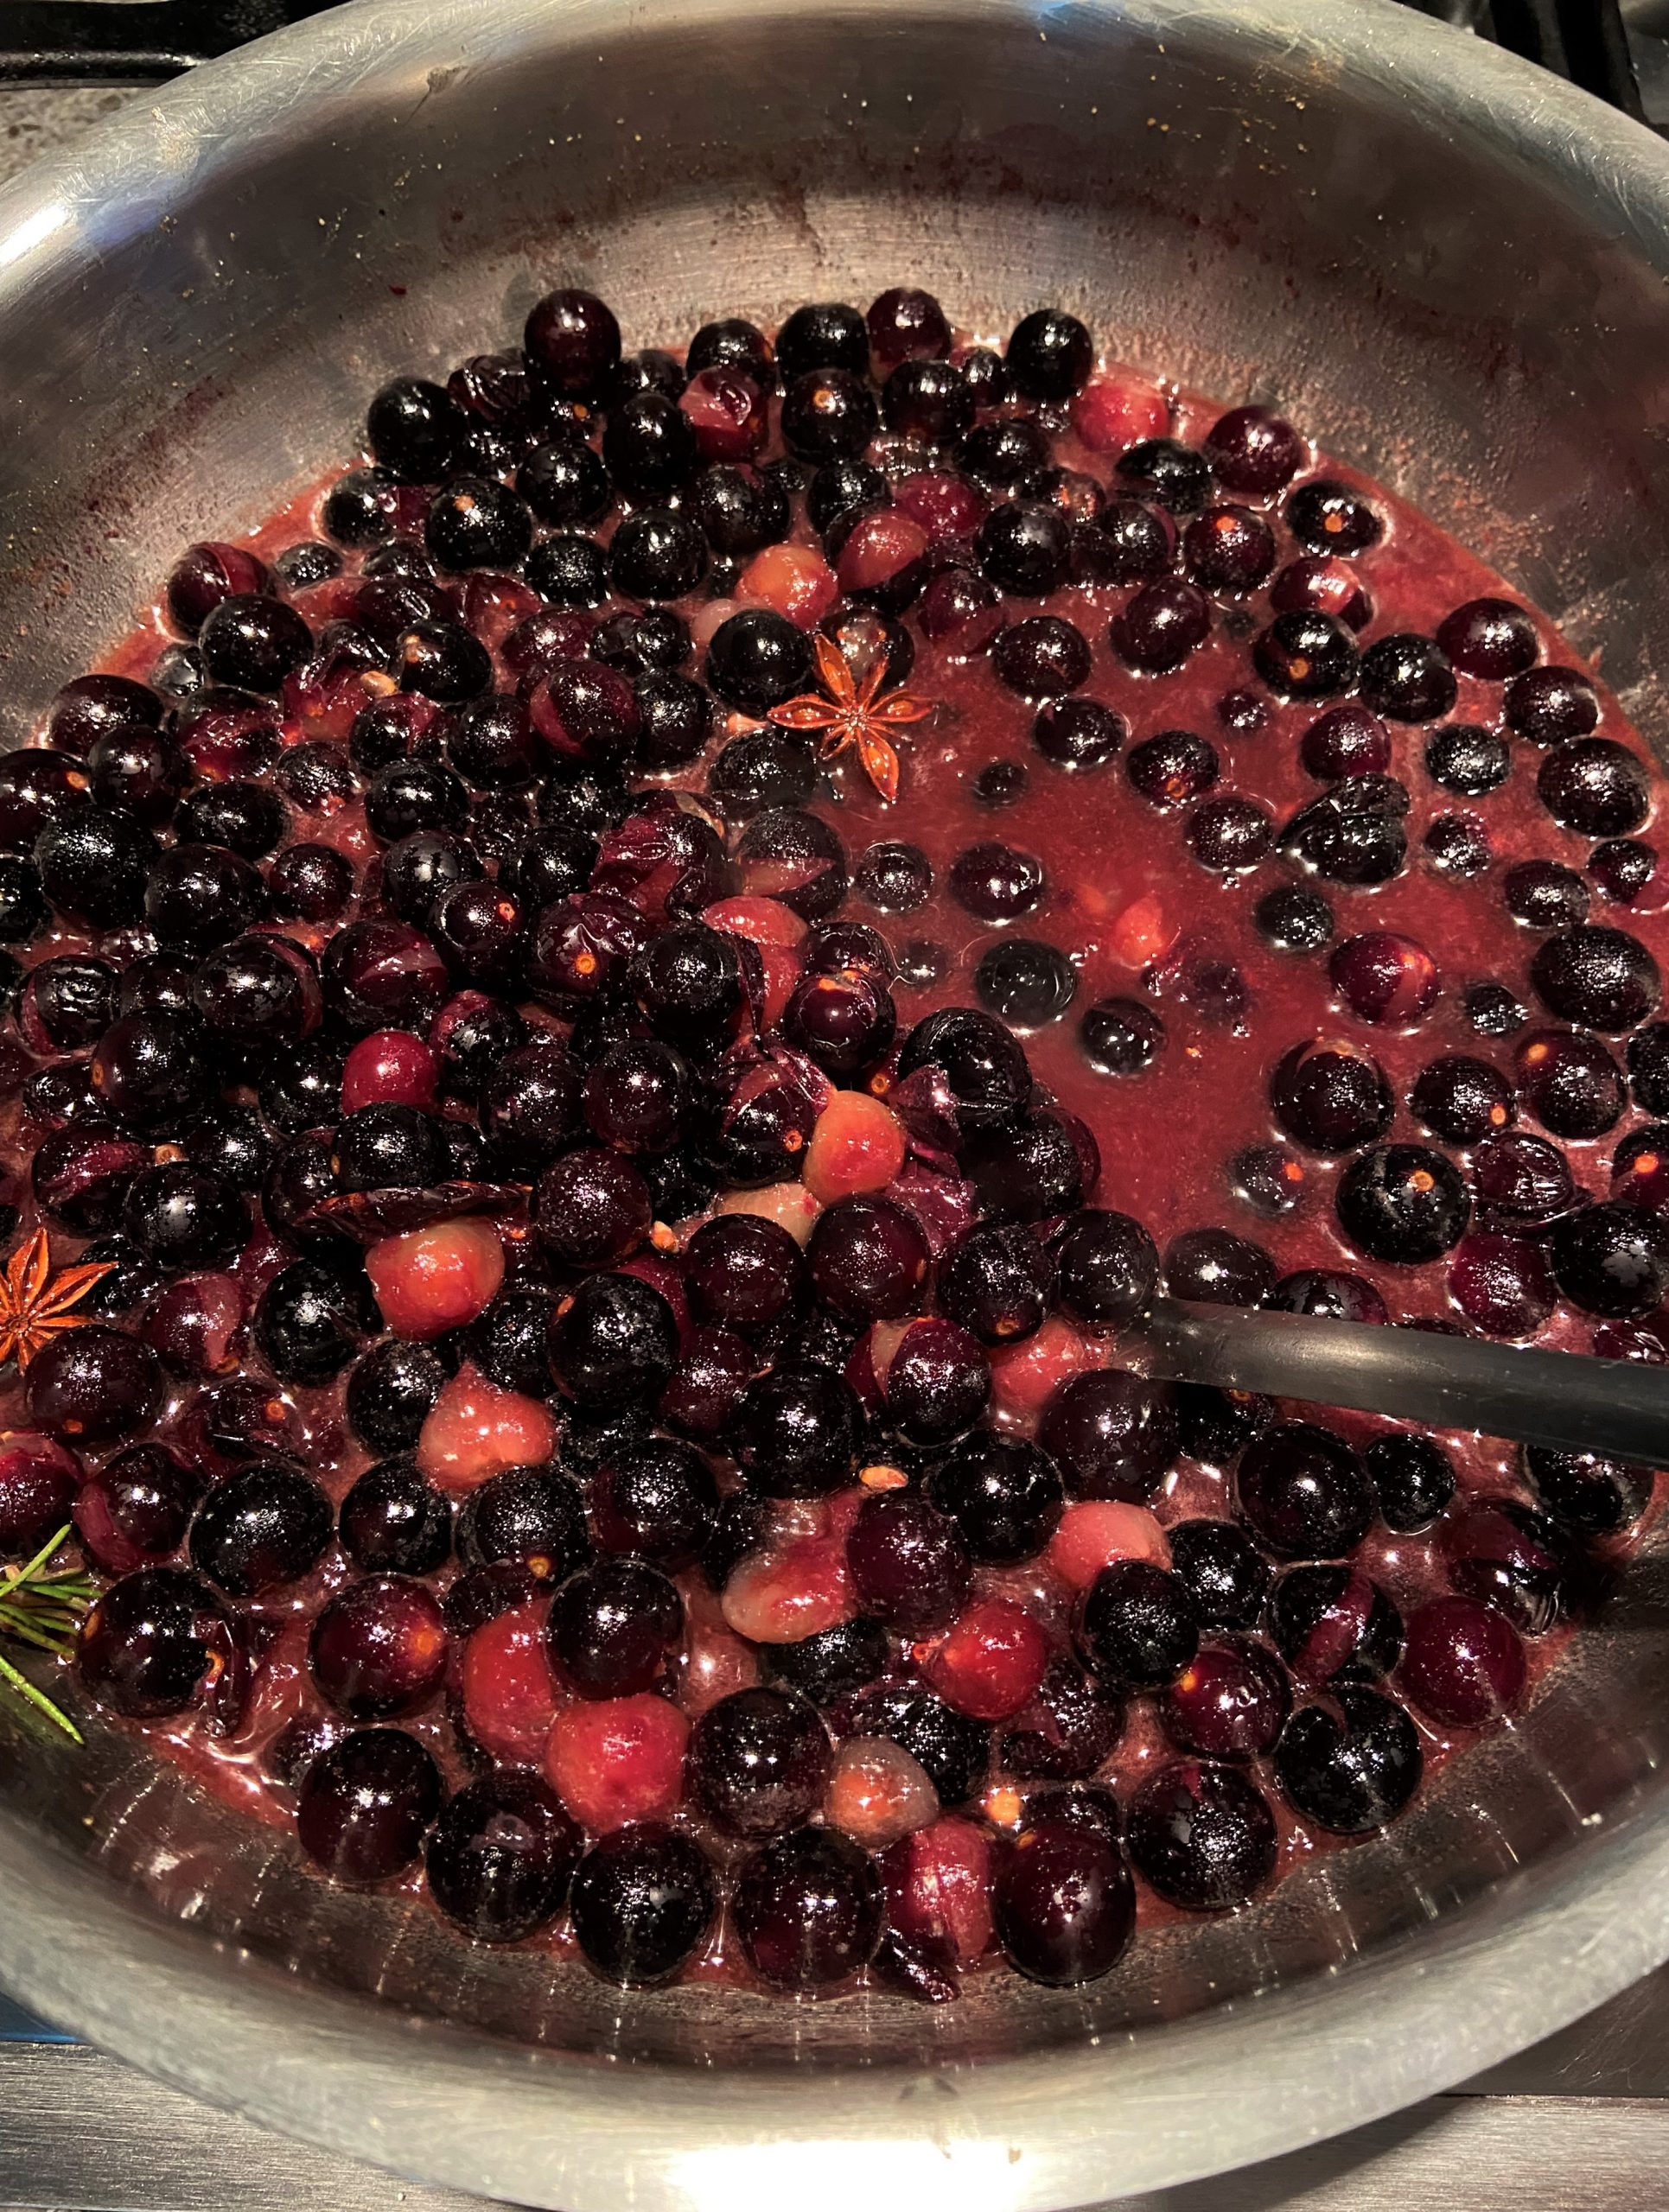 Concord Grapes Jam Recipe: Cook the grape jam